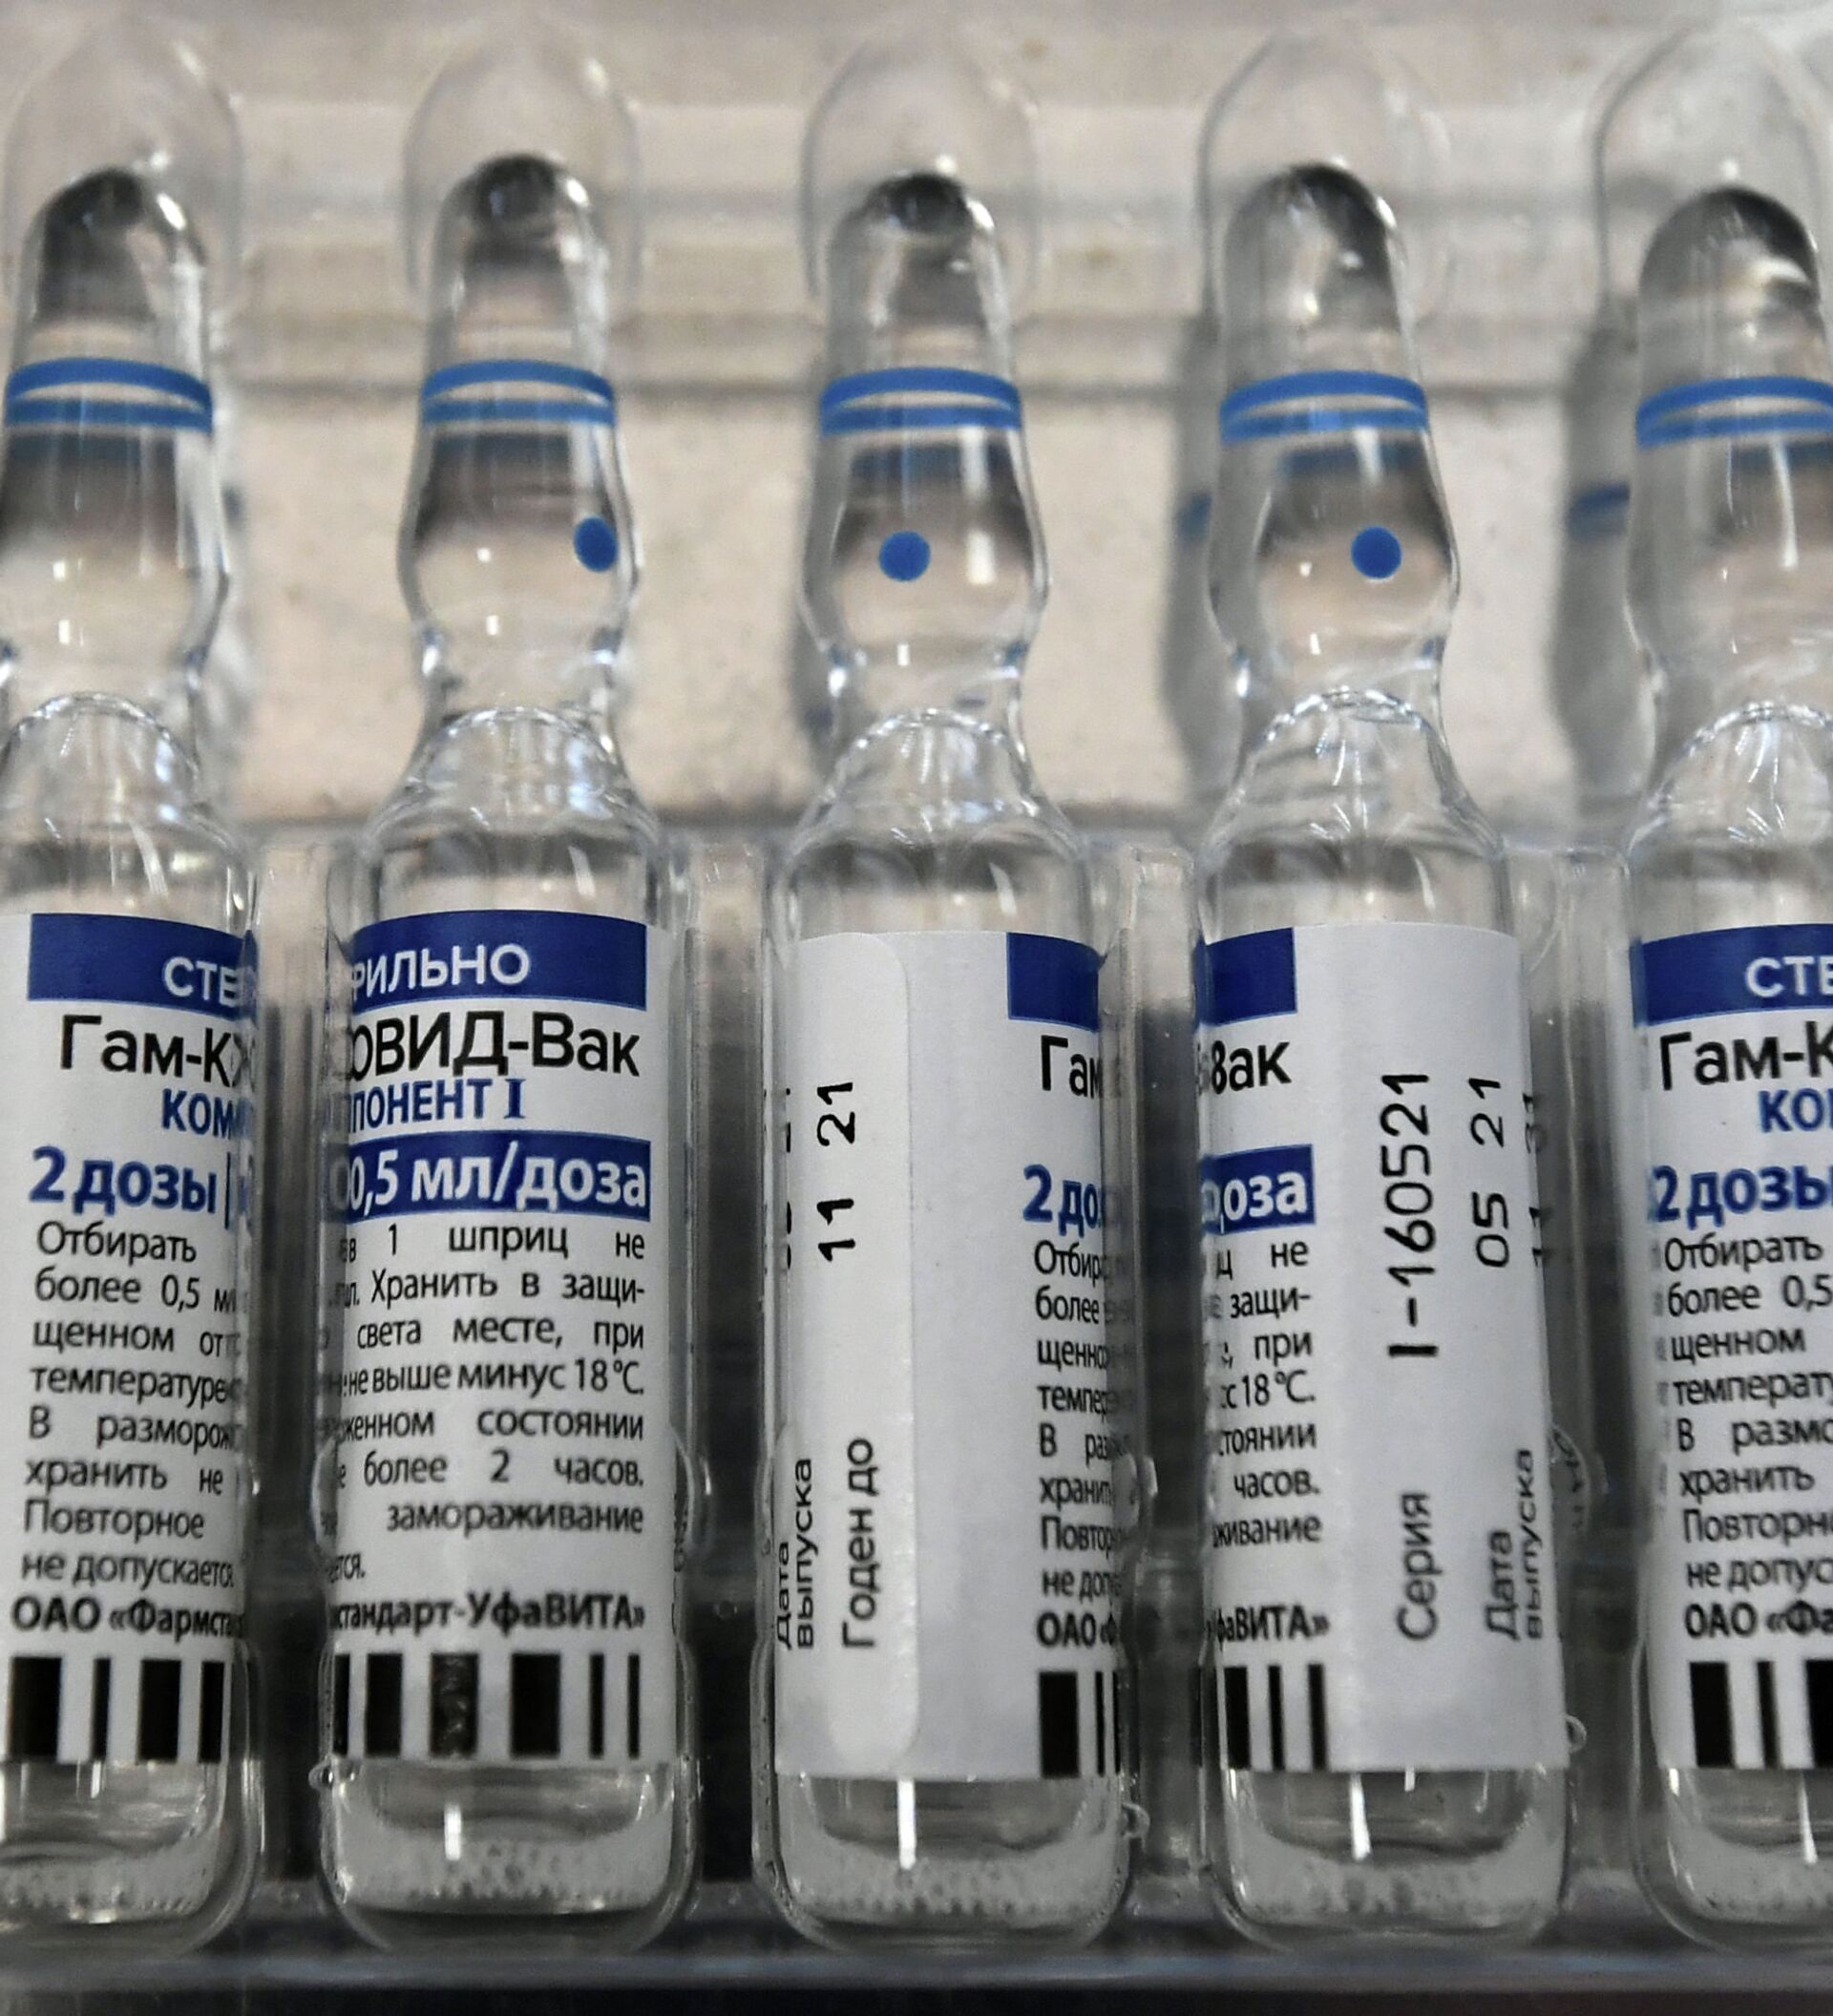 Как выглядит вакцина. Ампула 2 вакцины Спутник v. Вакцина Спутник 5 гам-ковид-ВАК. Спутник вакцина от коронавируса. Как выглядит ампула.